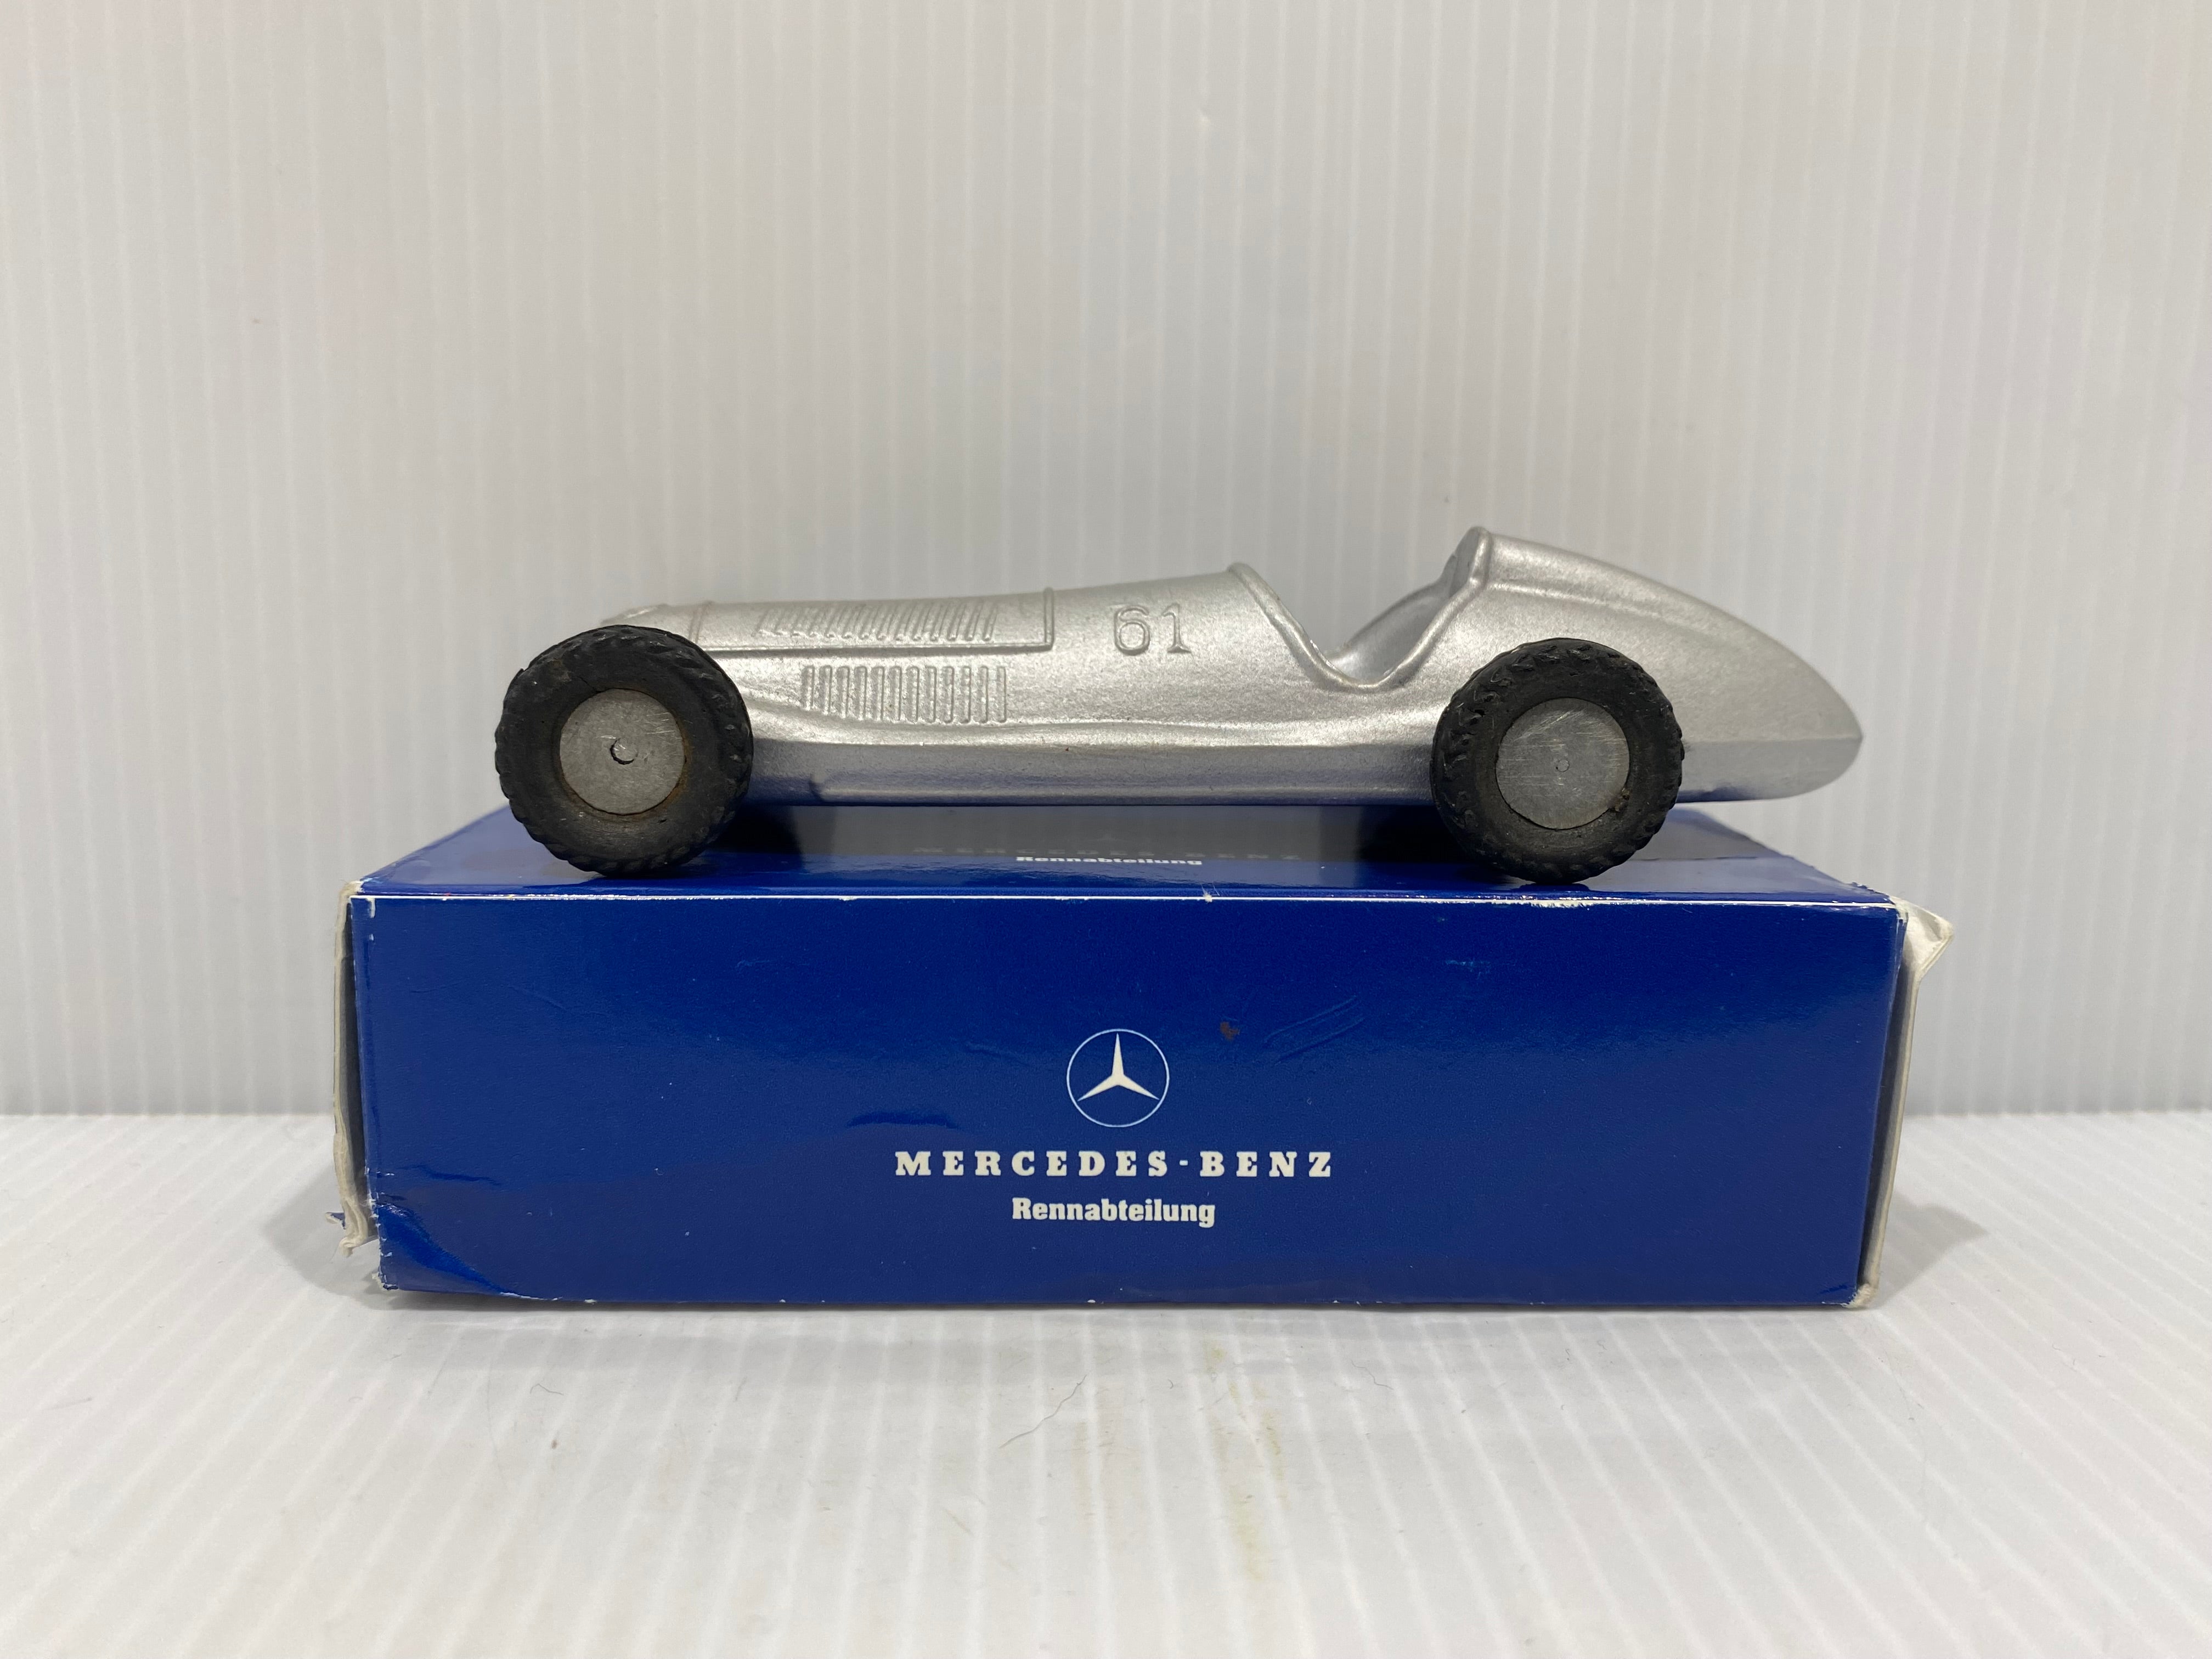 Märklin Mercedes Benz Silver Racer no.61